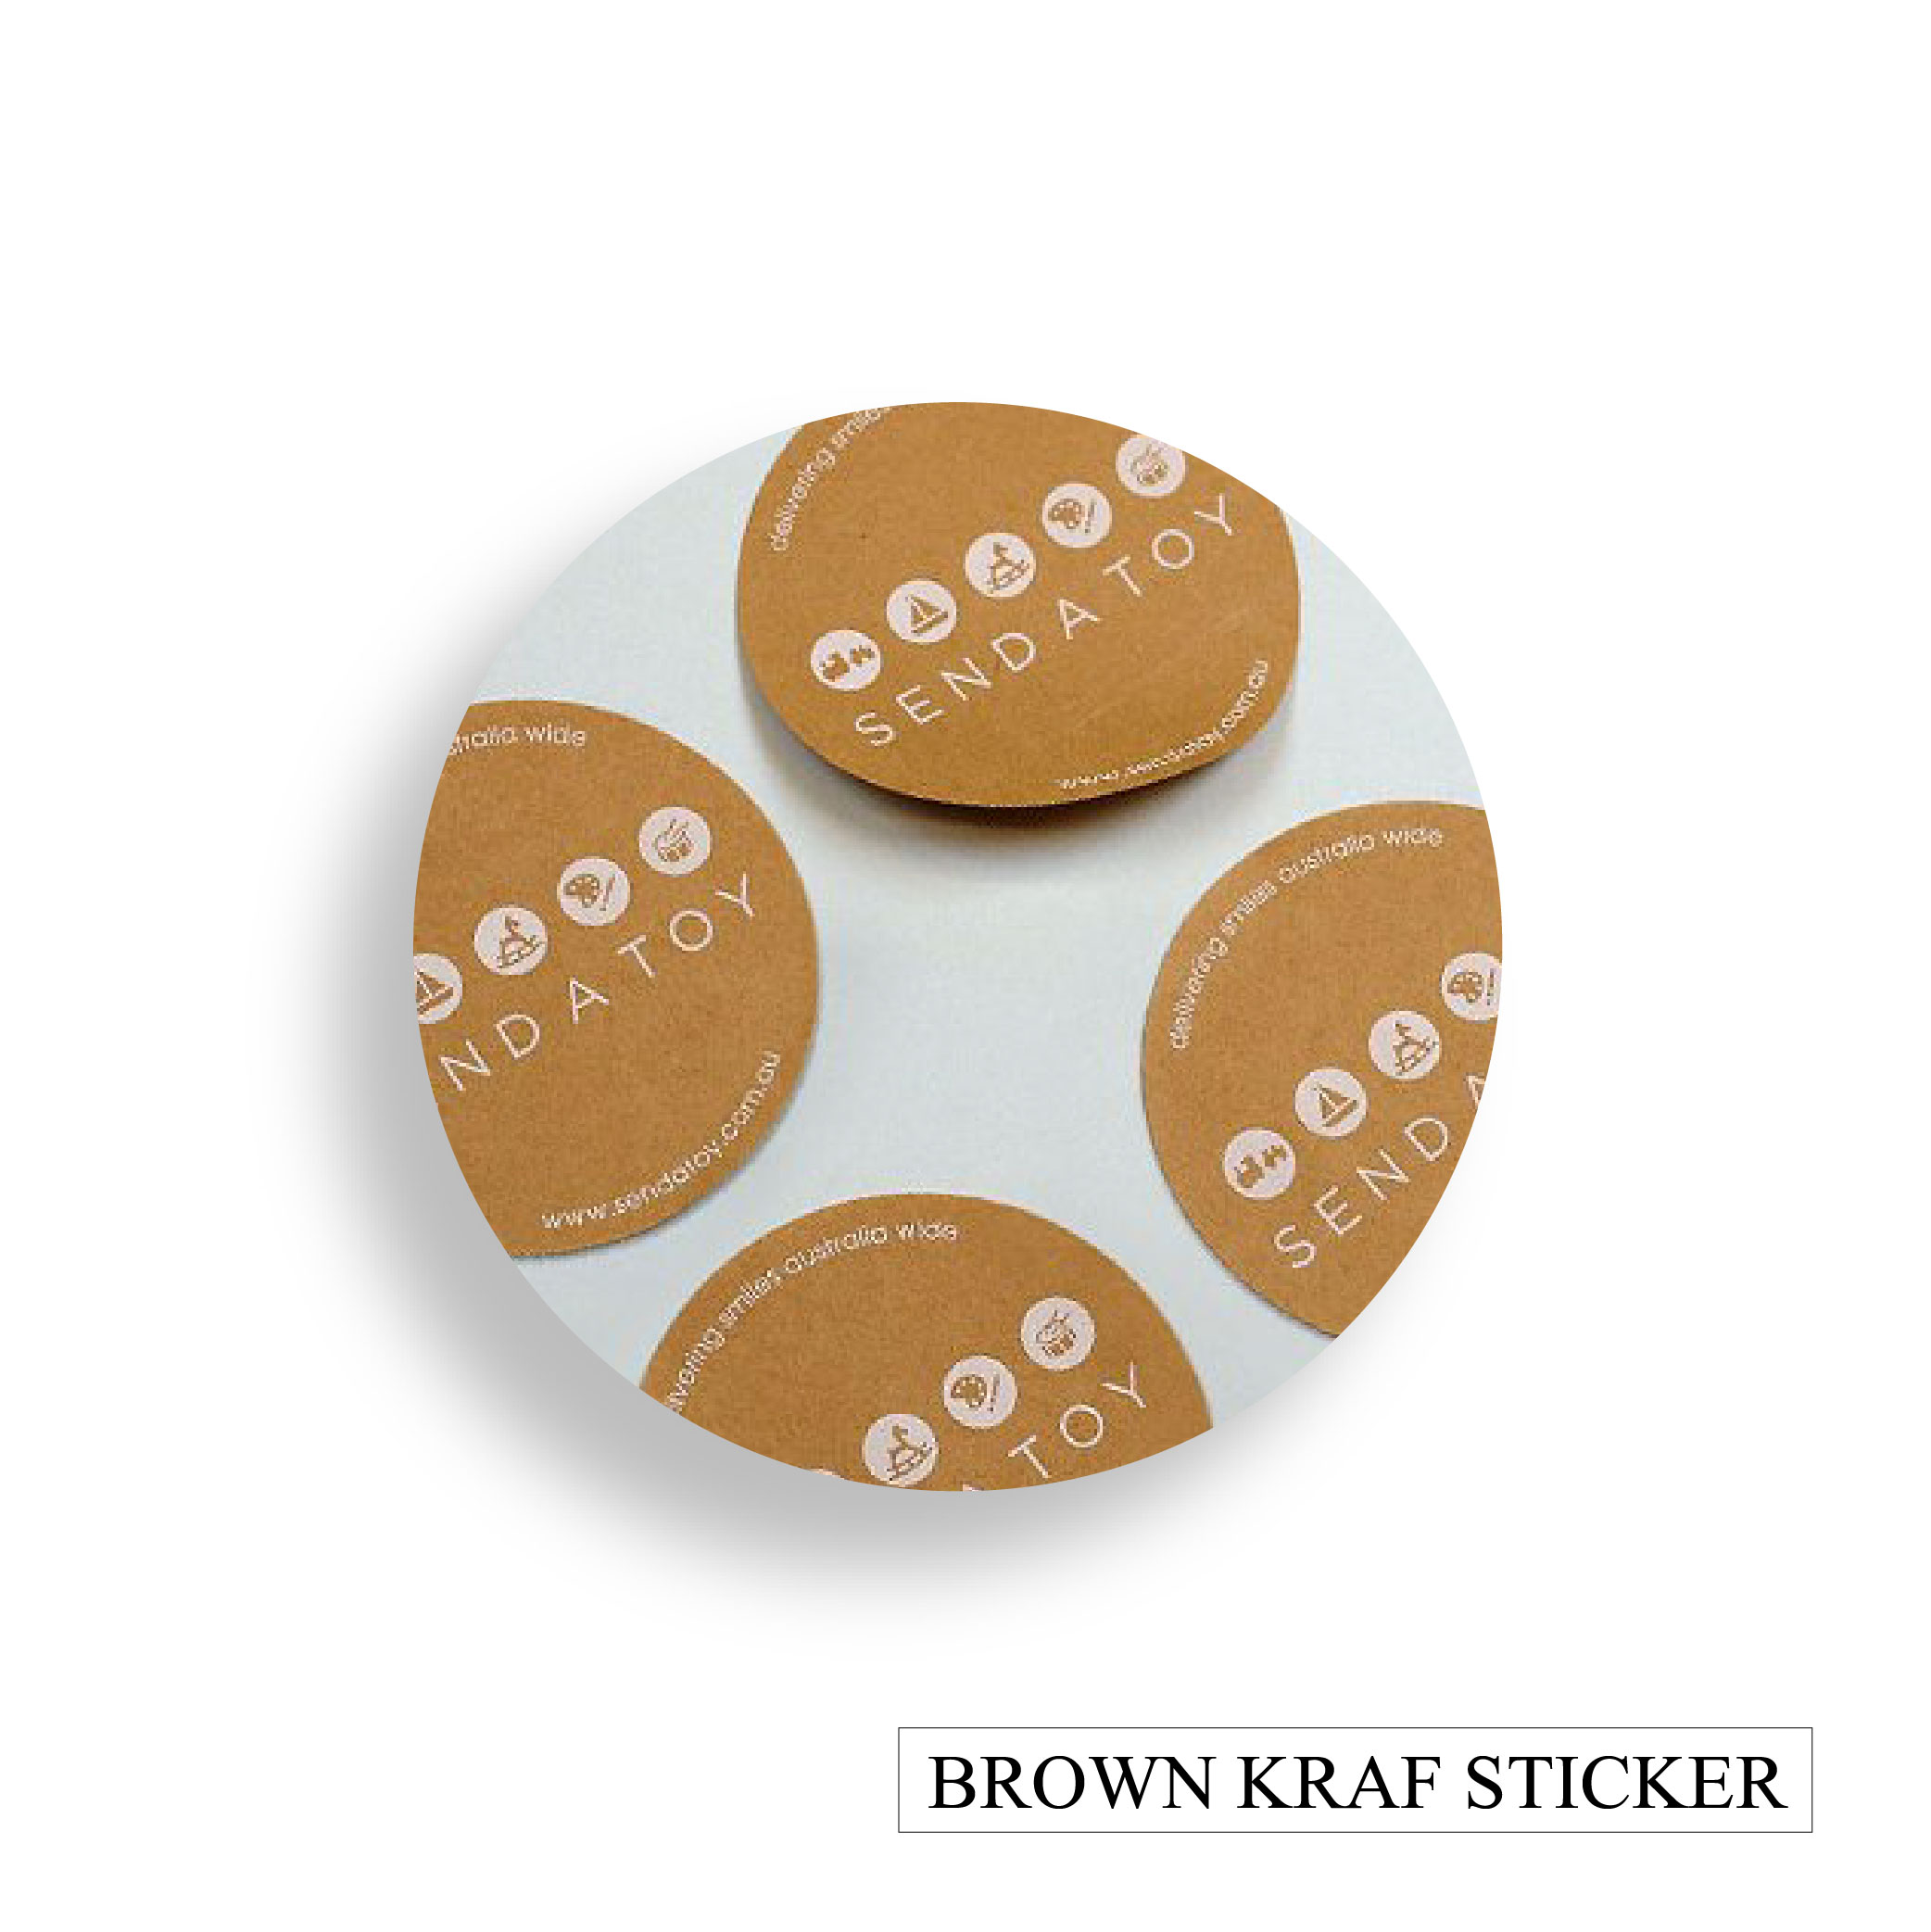 Brown Kraf sticker